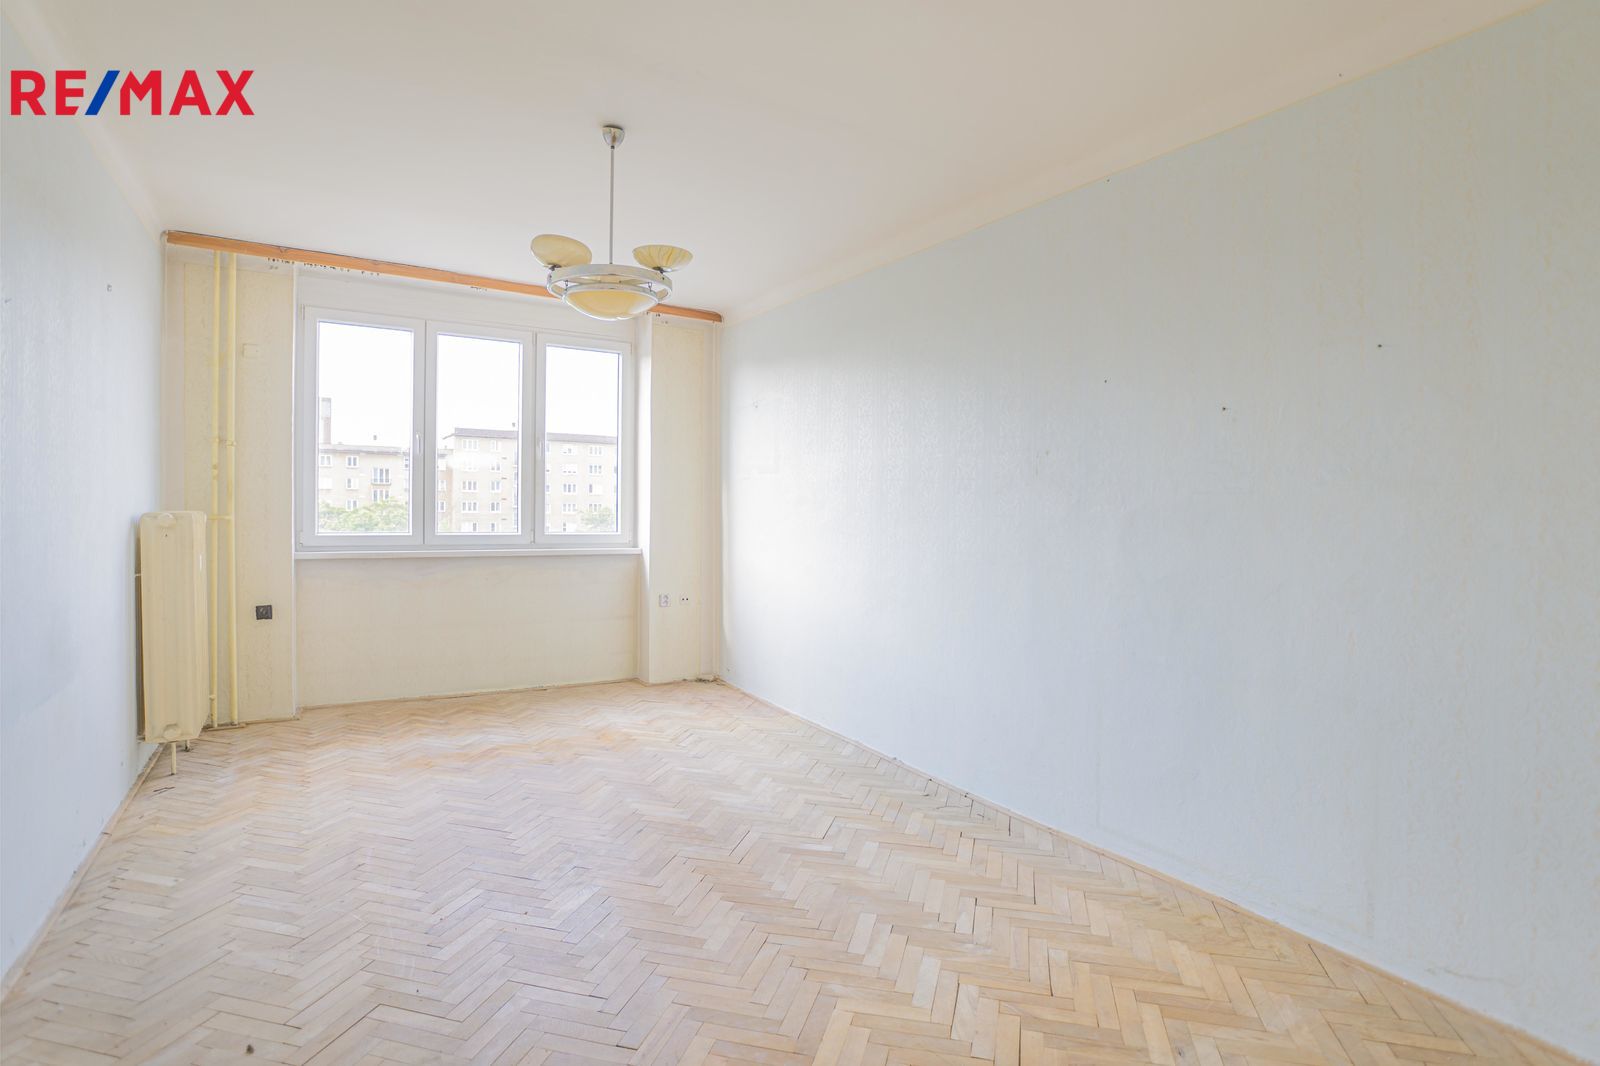 Prodej bytu 2+1 v osobním vlastnictví, 58 m2, Praha 10 - Vršovice